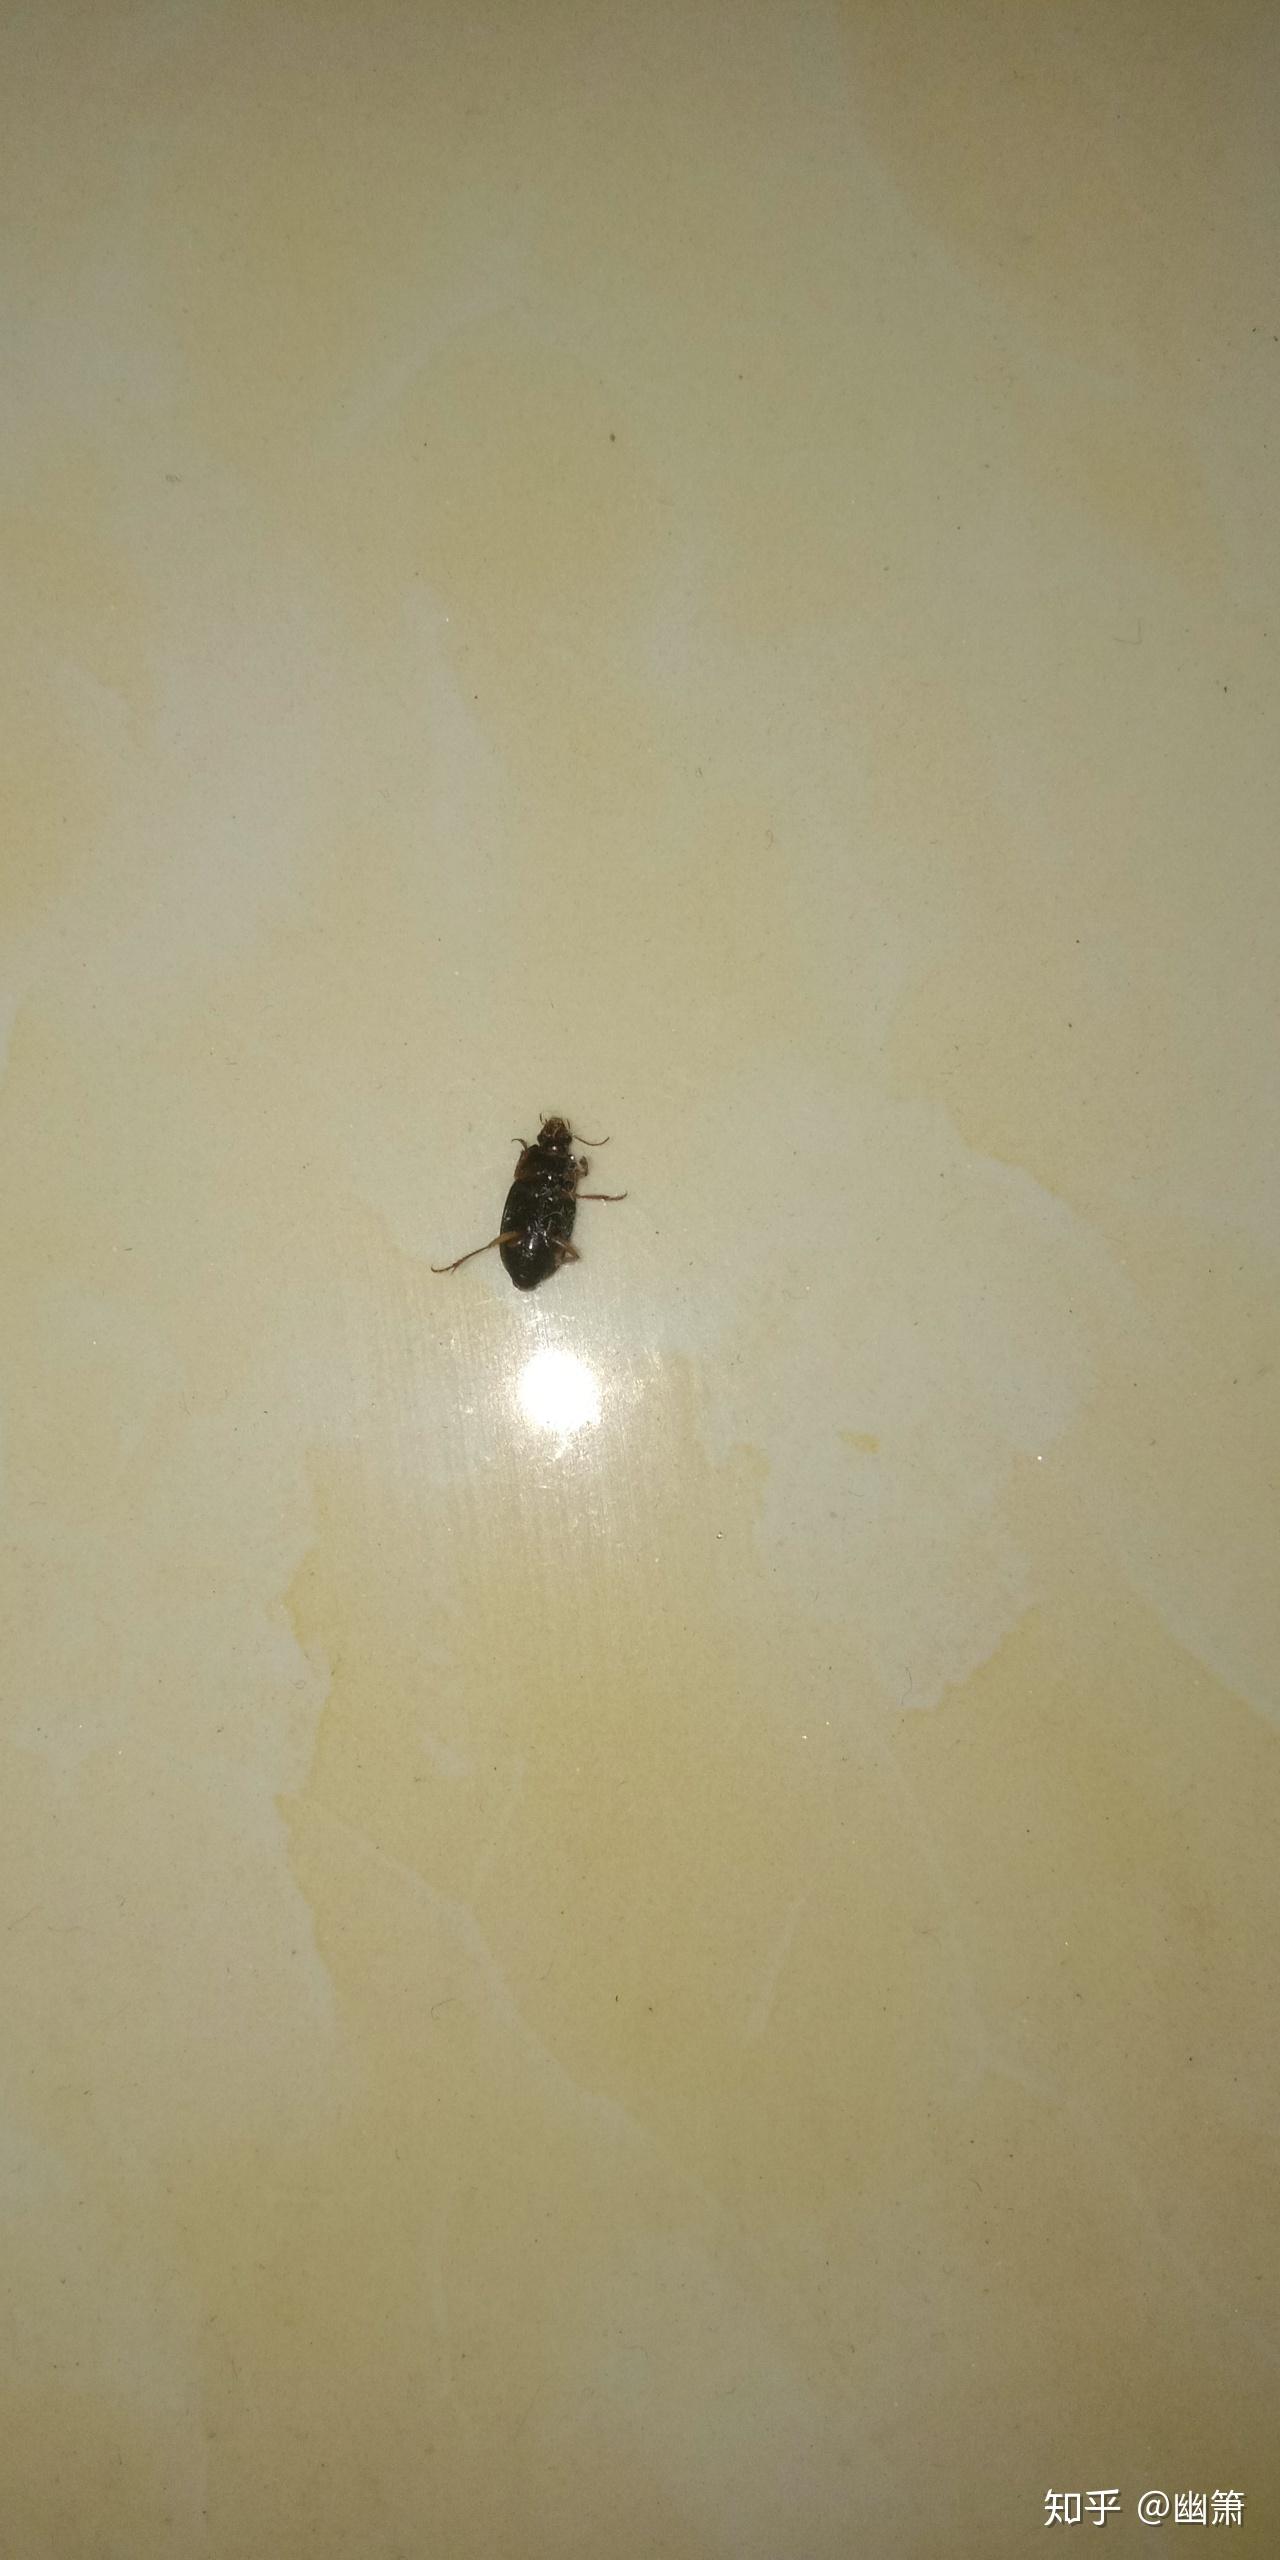 请问家里莫名其妙有一些虫子黑色会飞不是很容易踩死是什么虫子